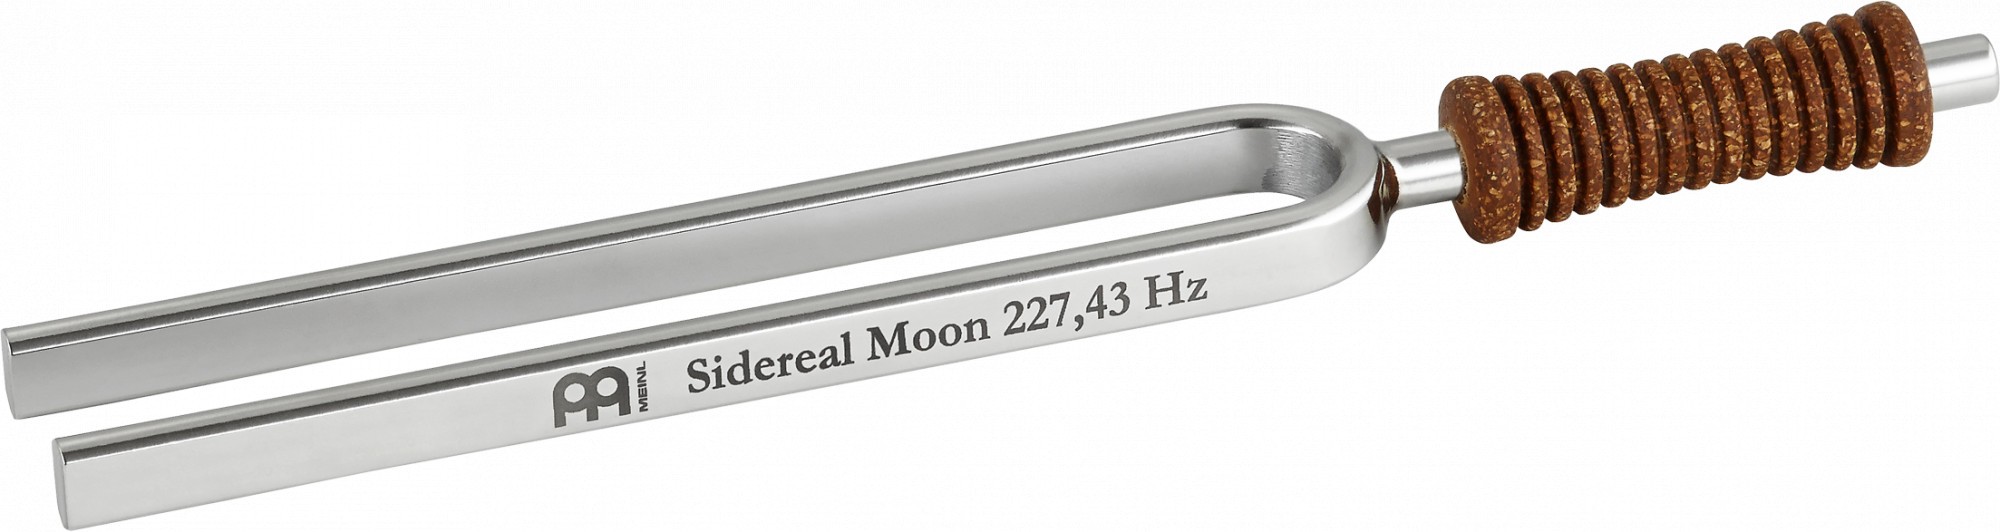 Meinl Stimmgabel Siderischer Mond 227,43 Hz/A3#